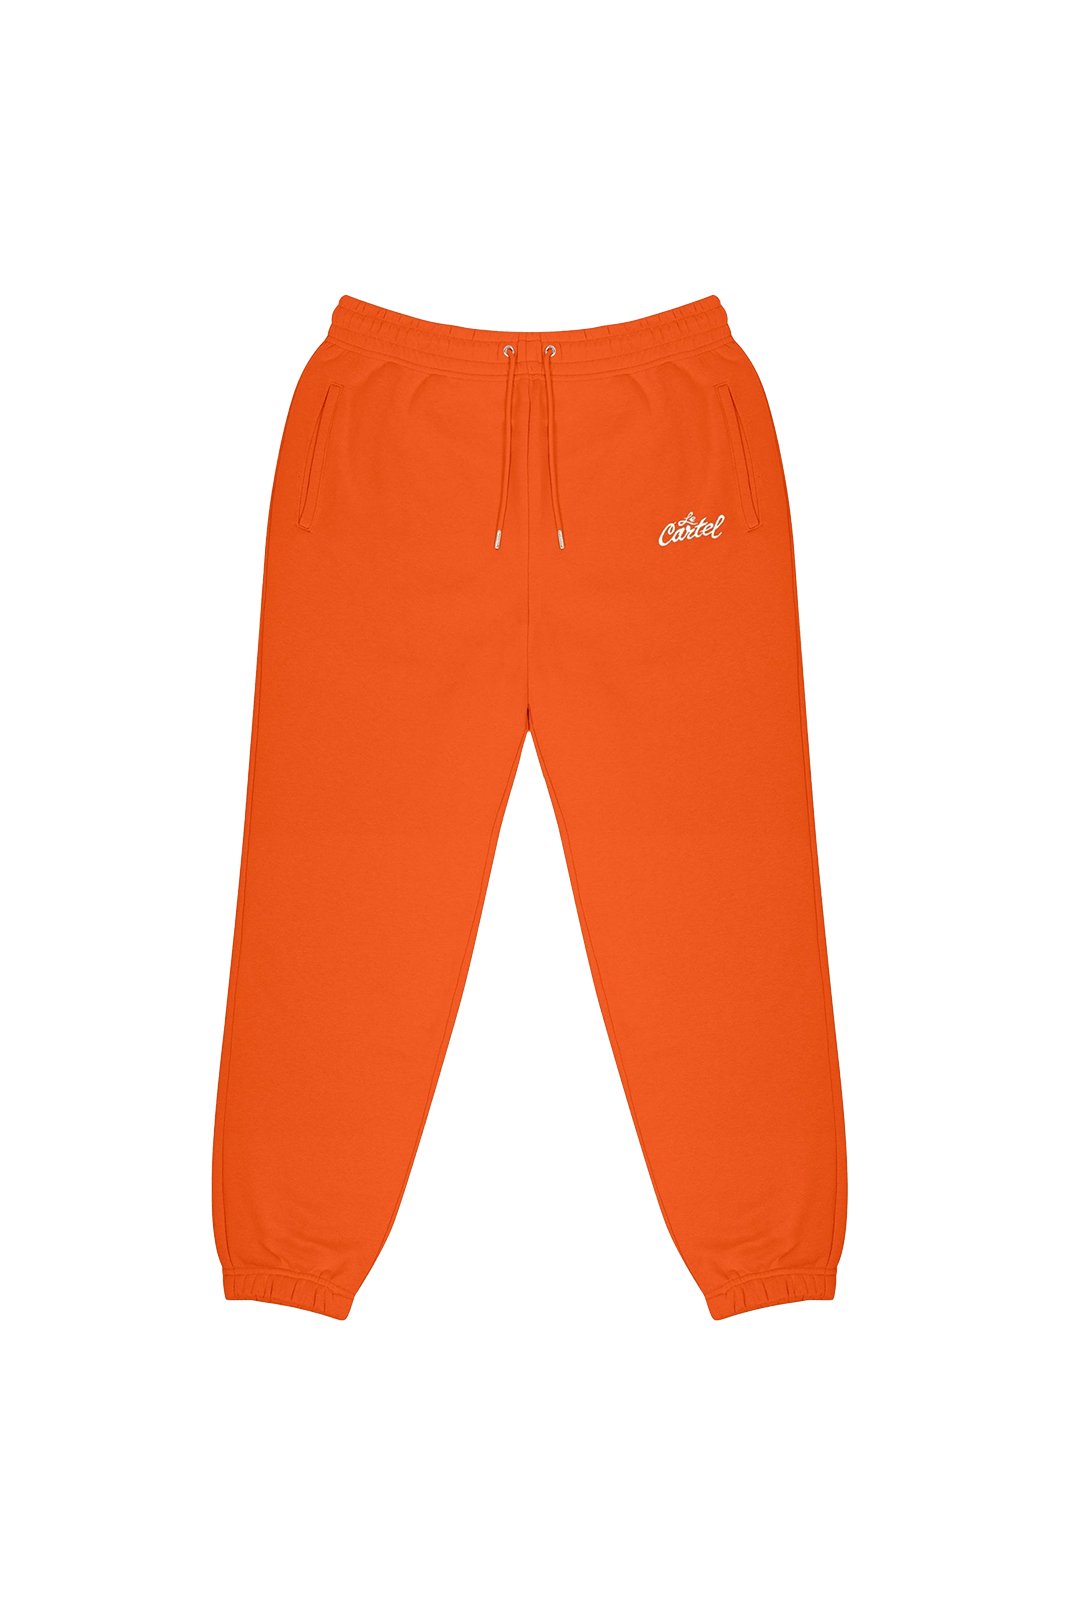 OG・Pantalon unisexe・Orange - Le Cartel